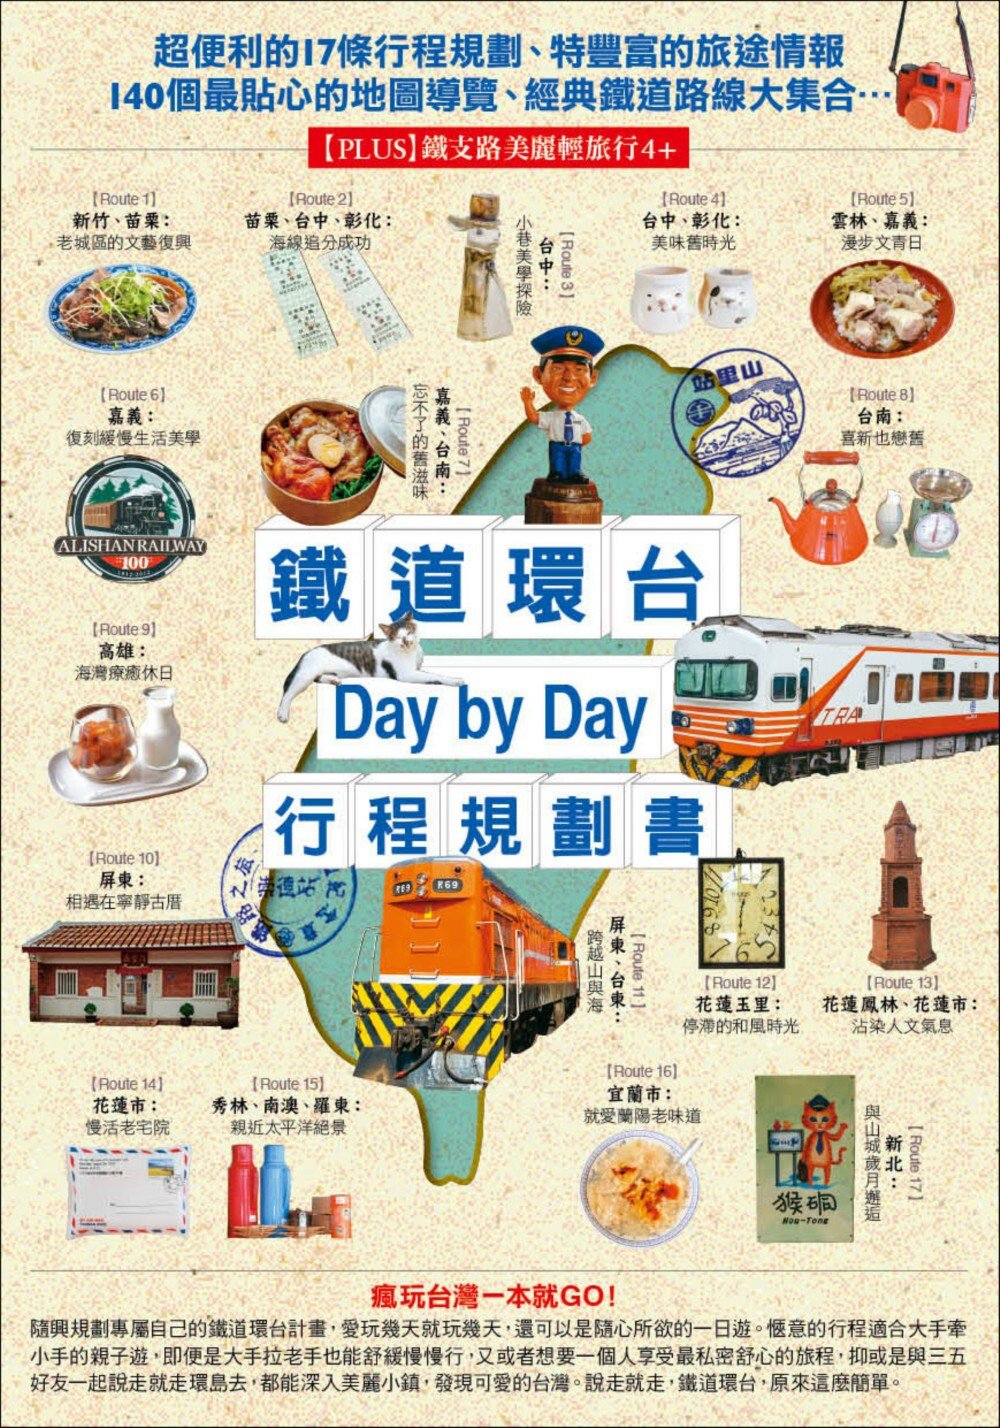 鐵道環台Day by Day行程...